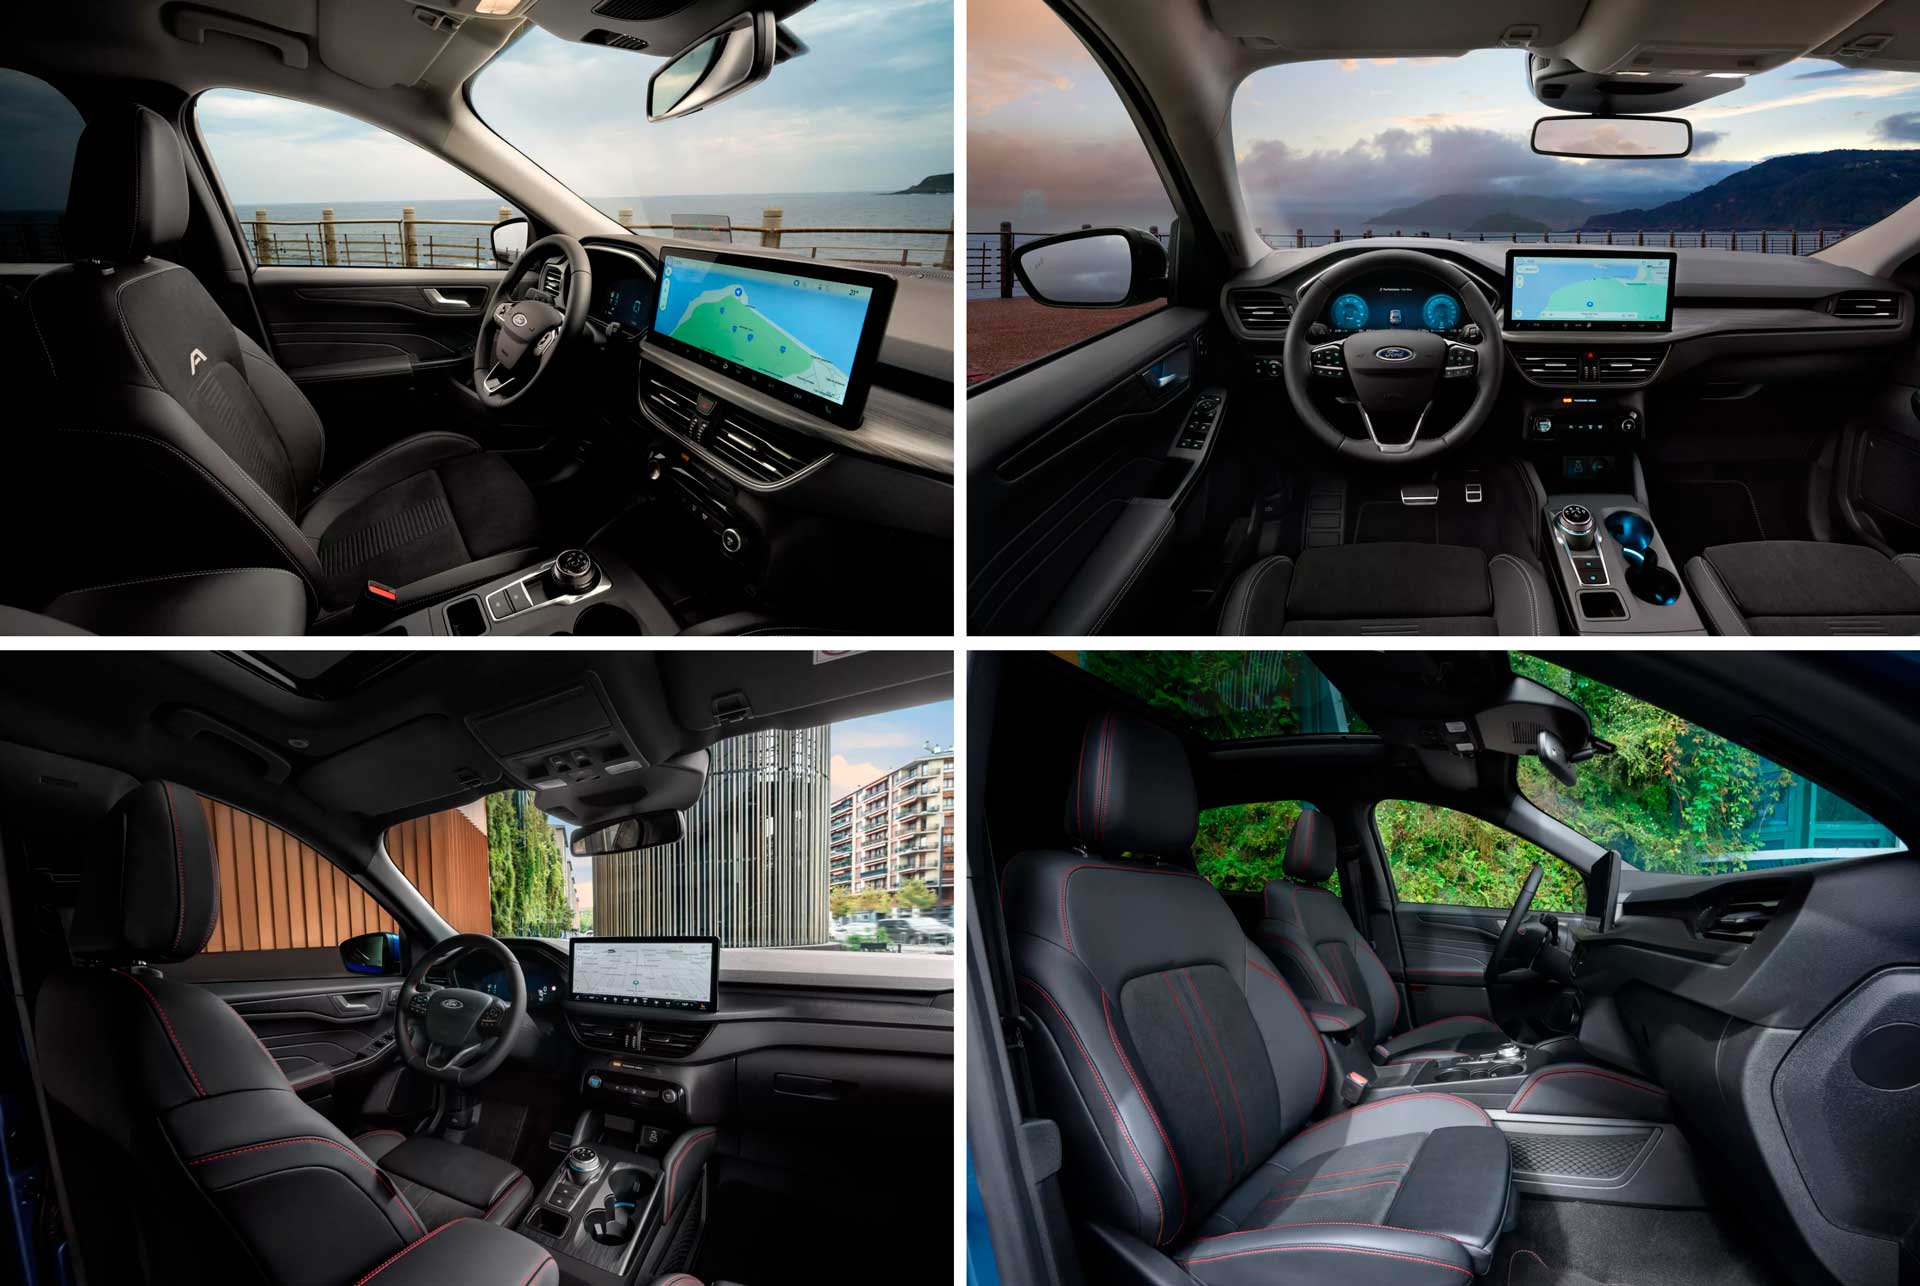 Европейский Ford Kuga в ходе обновления получил улучшенную информационно-развлекательную систему и более низкие цены